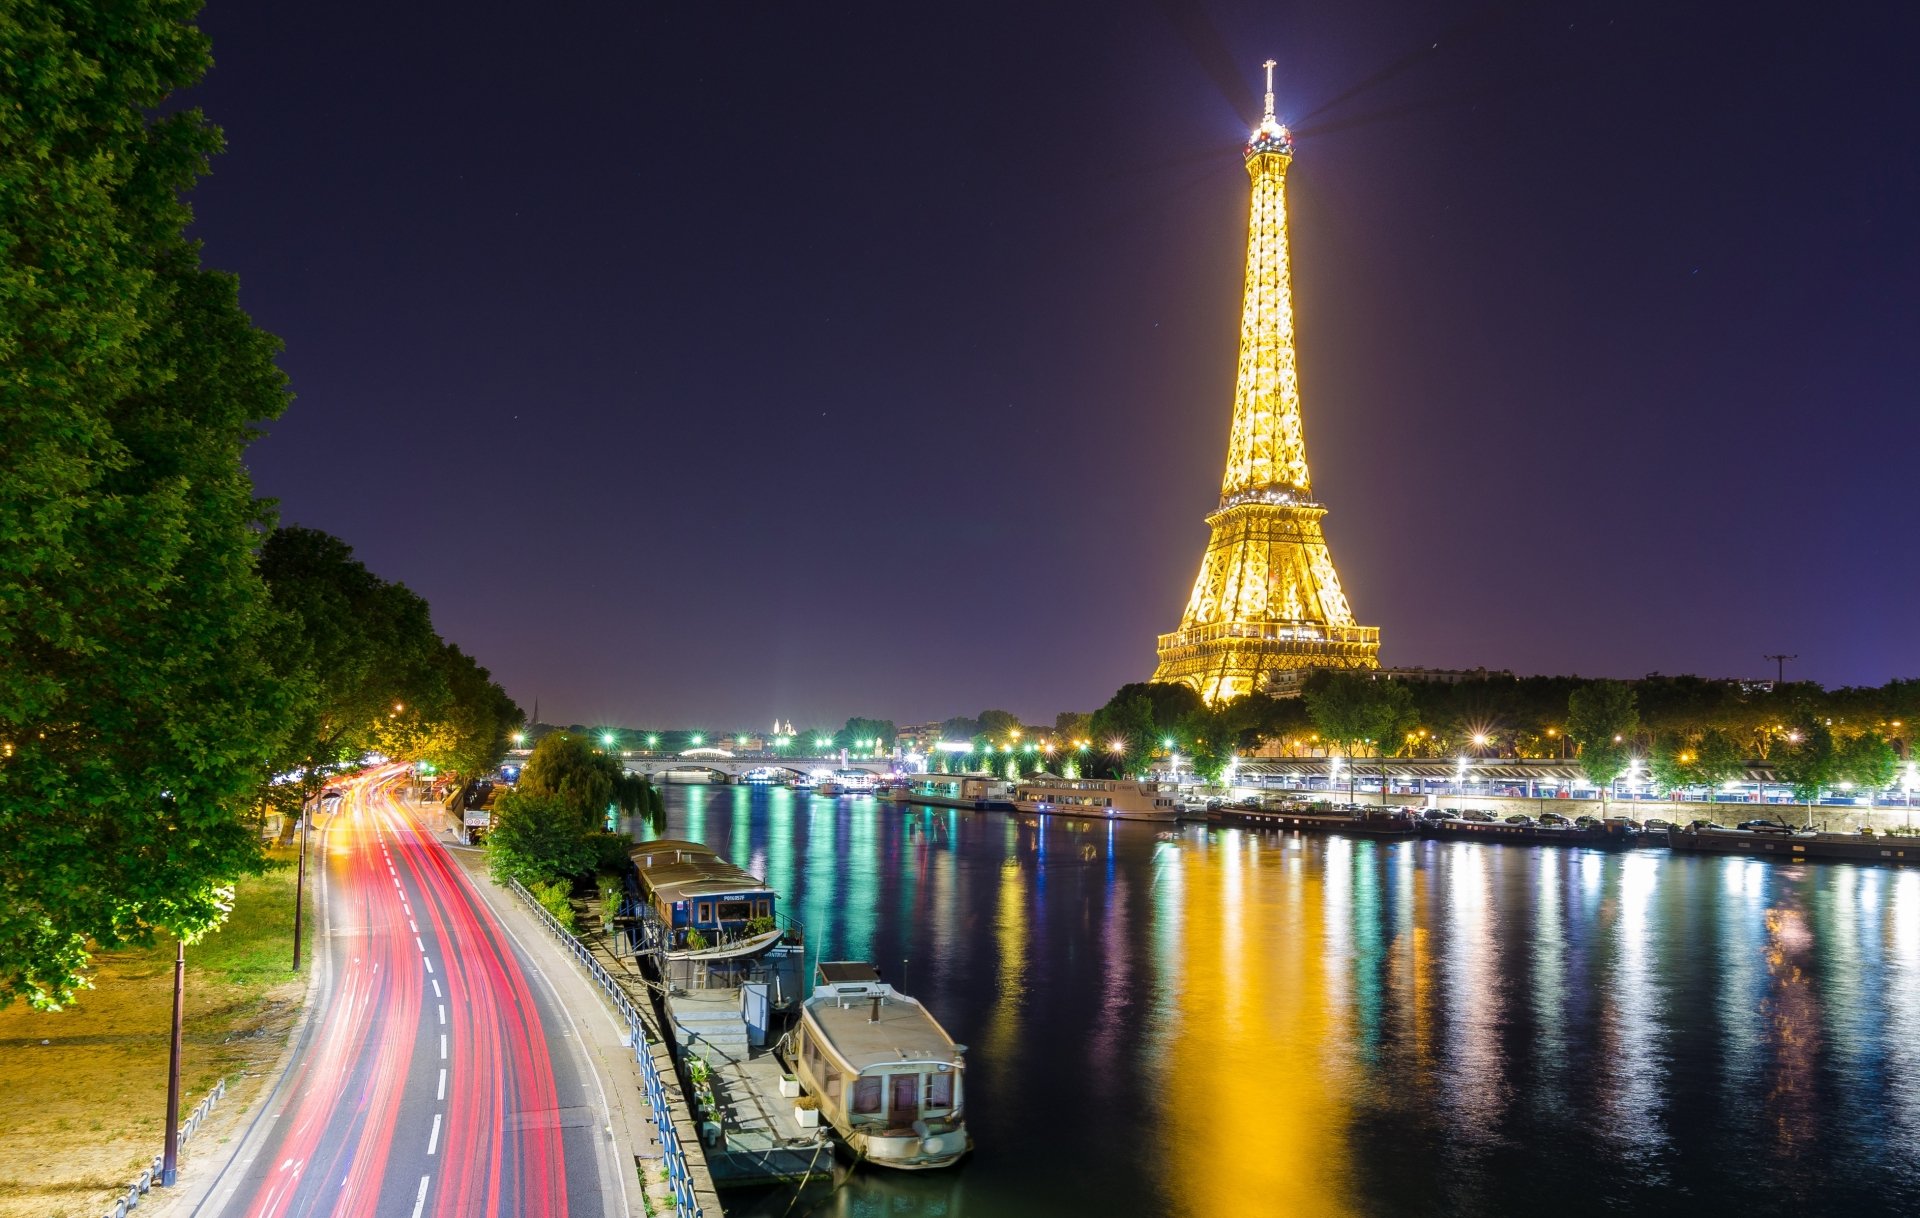 Man Made Eiffel Tower HD Wallpaper